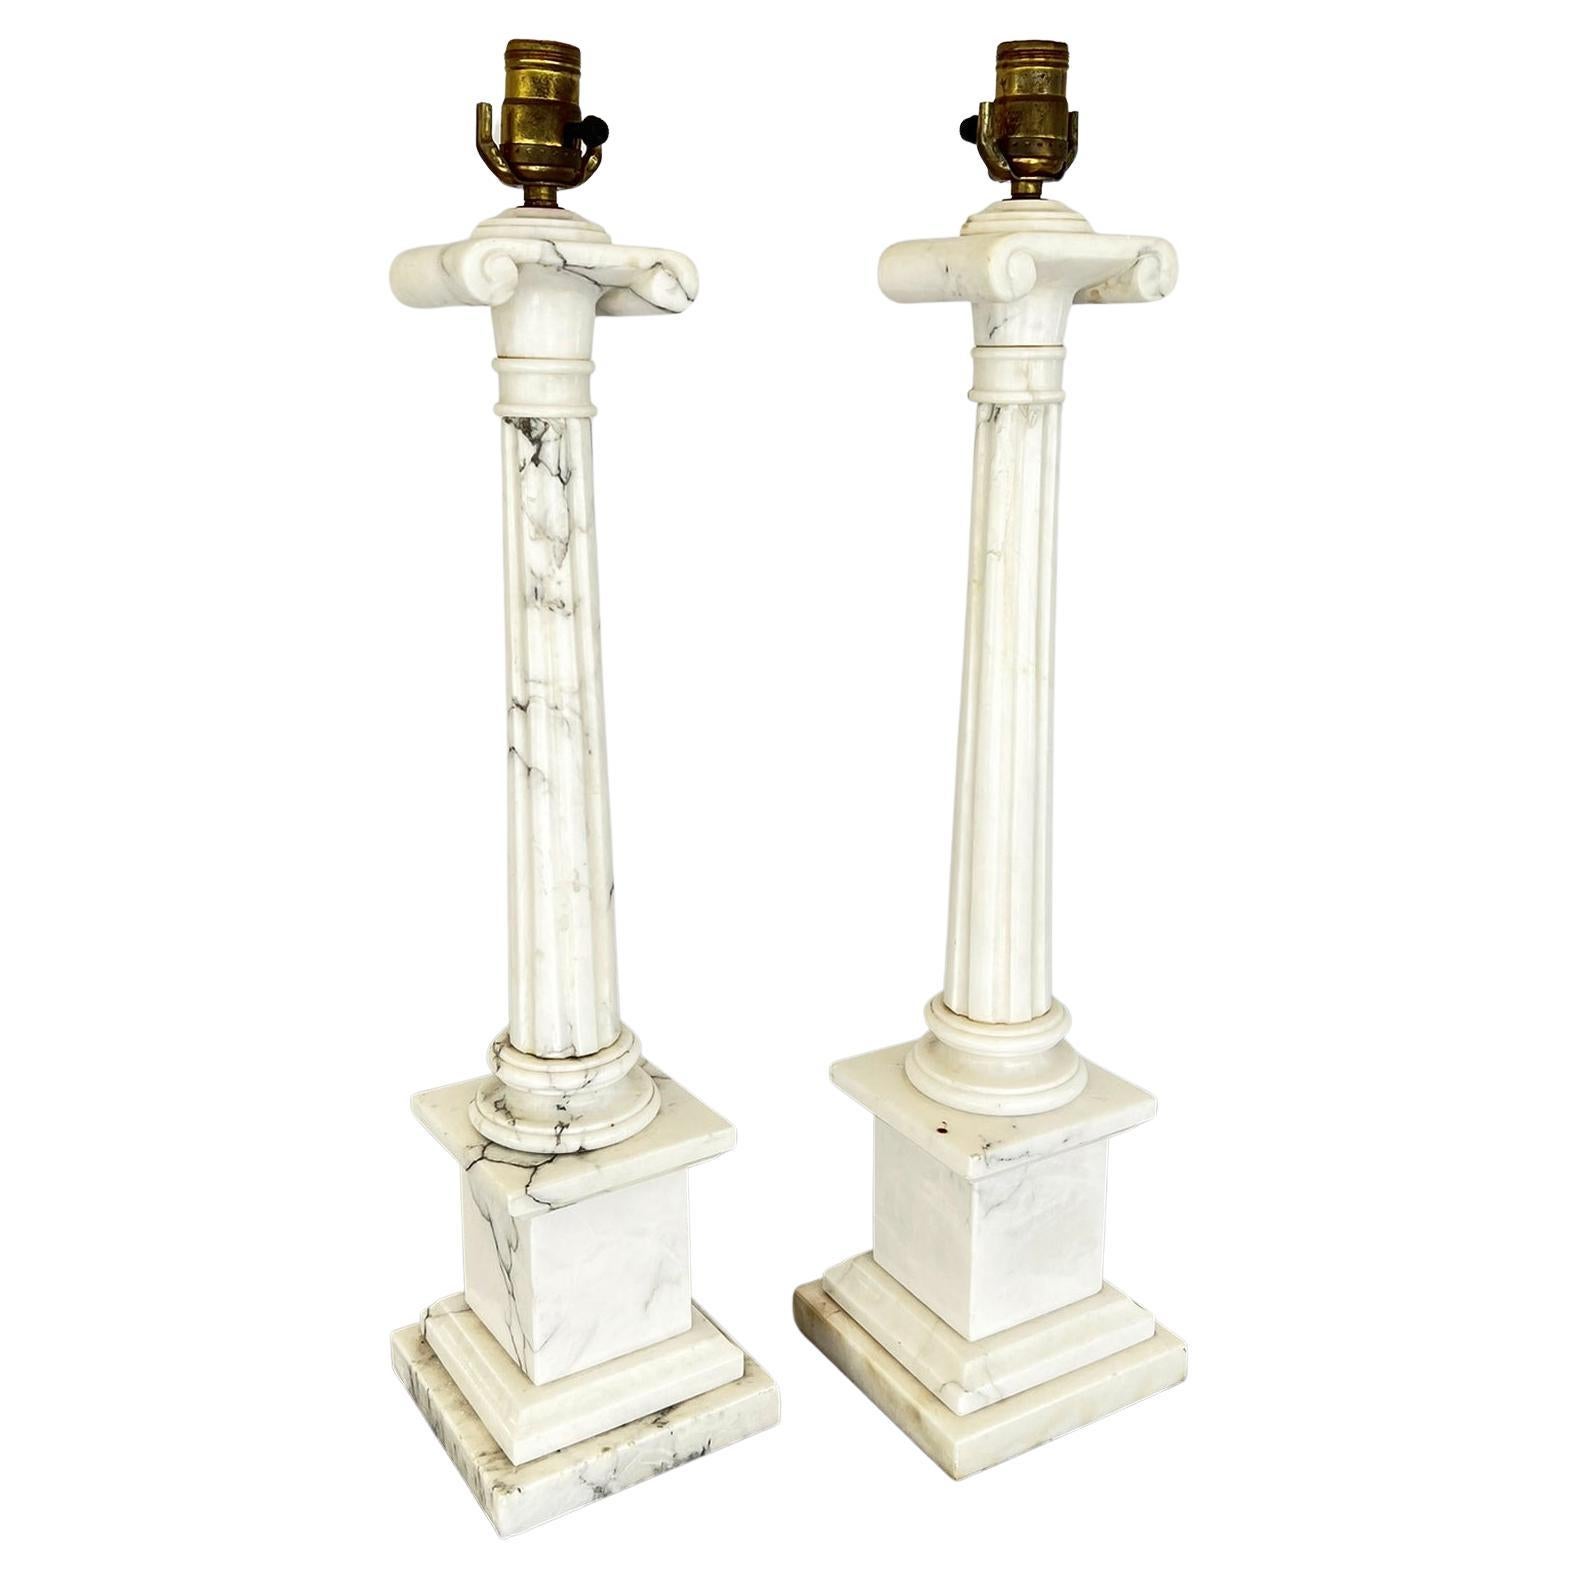 Paire de lampes colonnaires italiennes vintage en albâtre avec chapiteaux ioniques